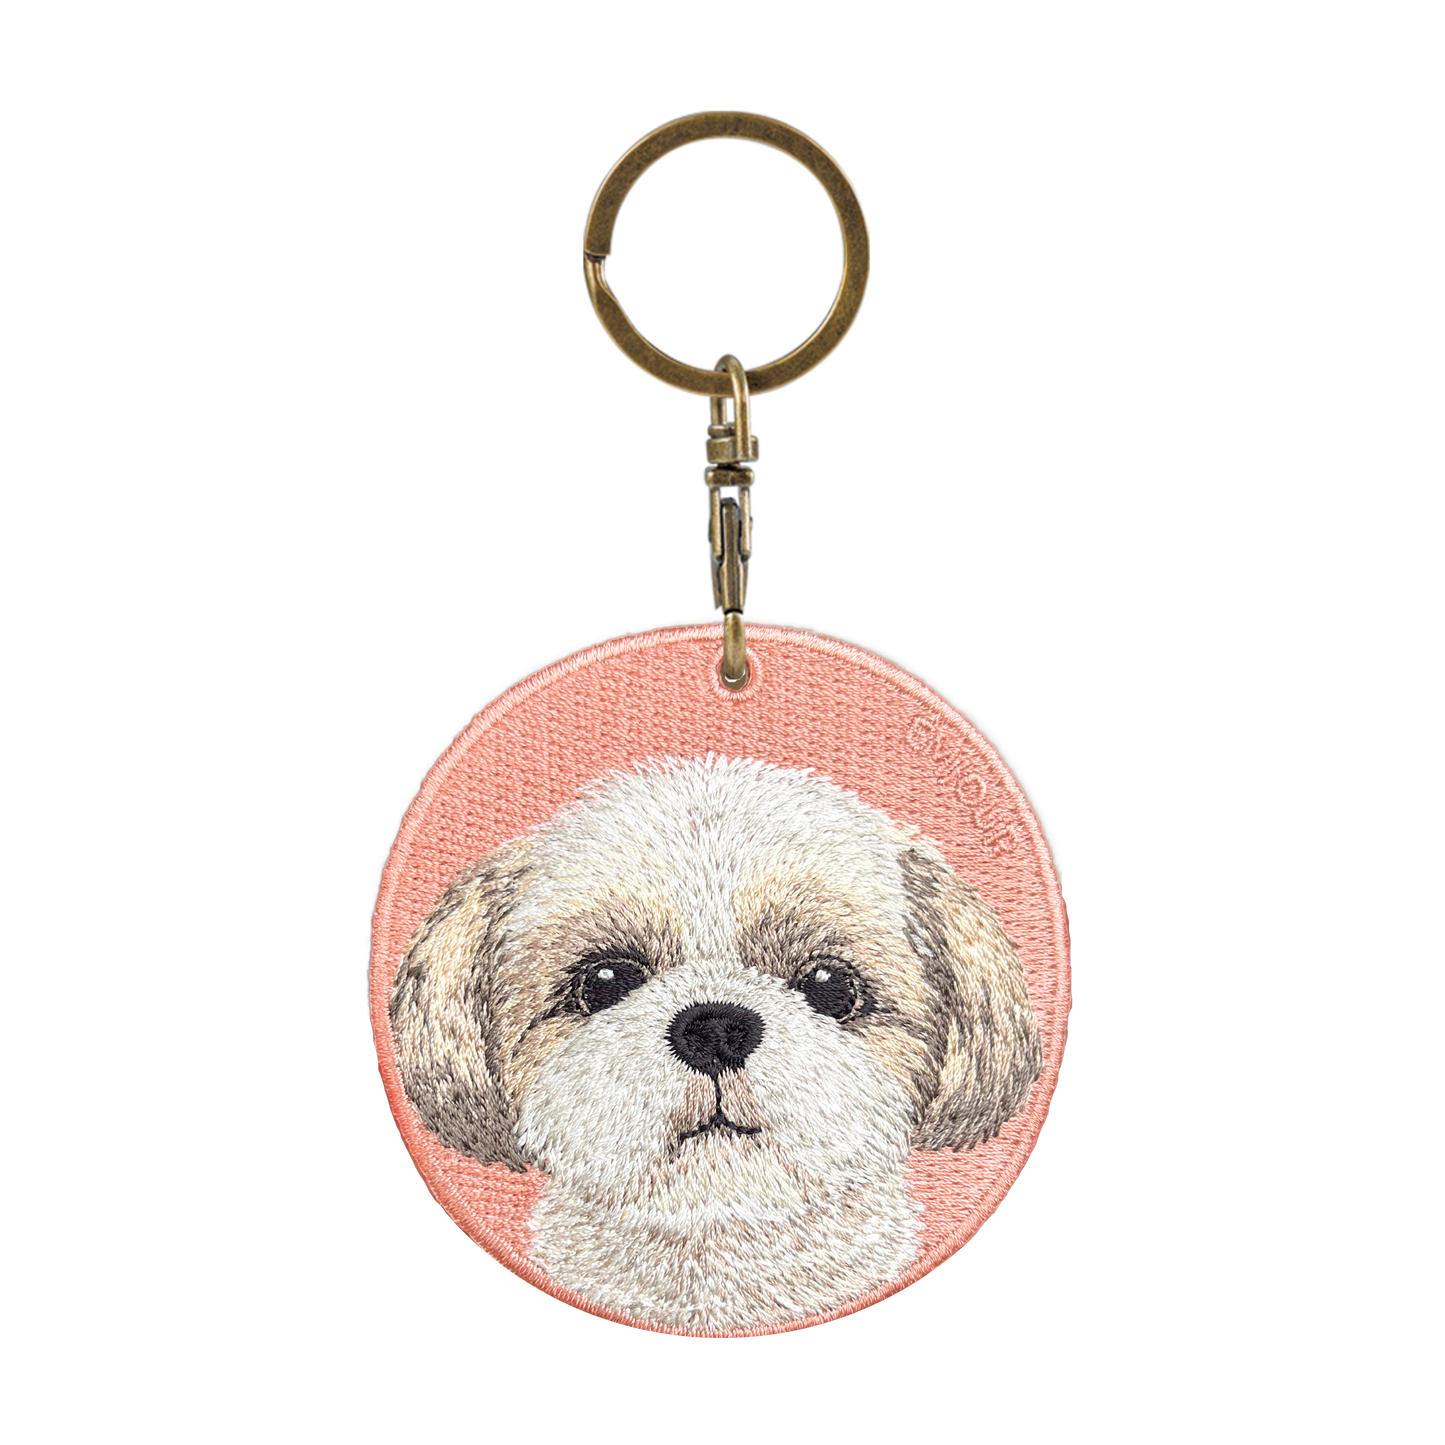 Double-sided embroidery pendant-Shishi dog